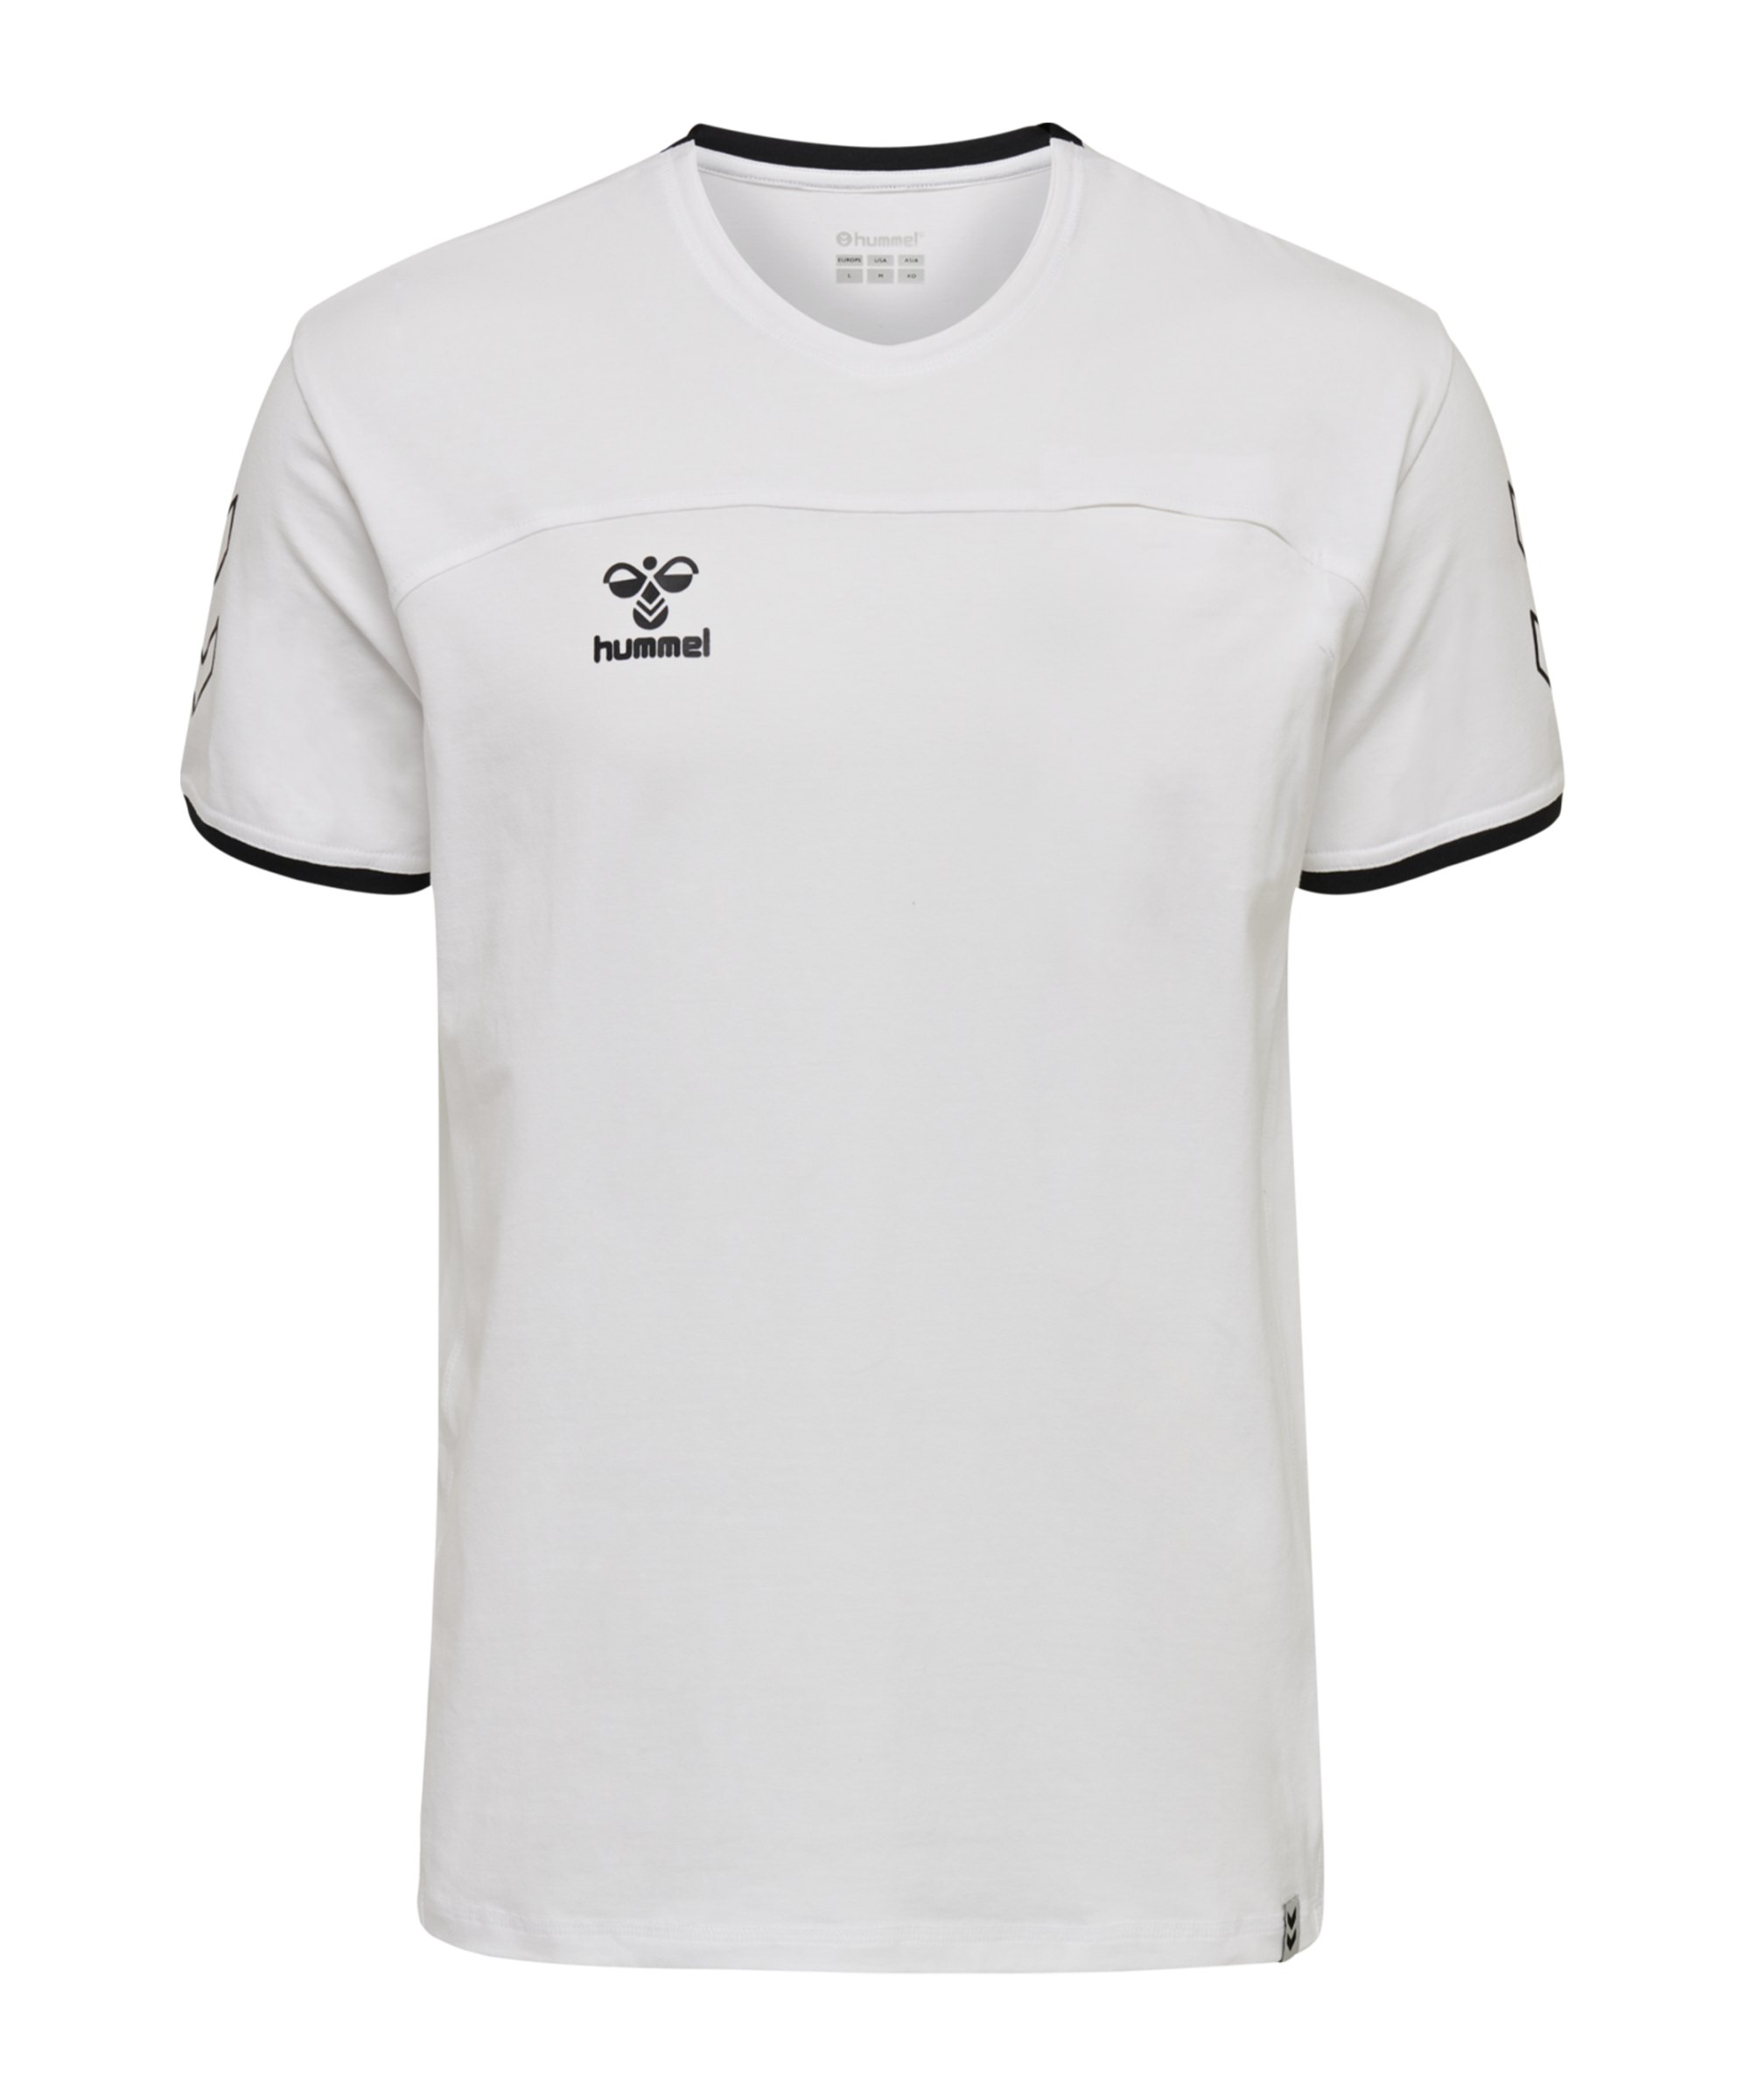 Hummel Cima T-Shirt Kids Weiss F9001 - weiss